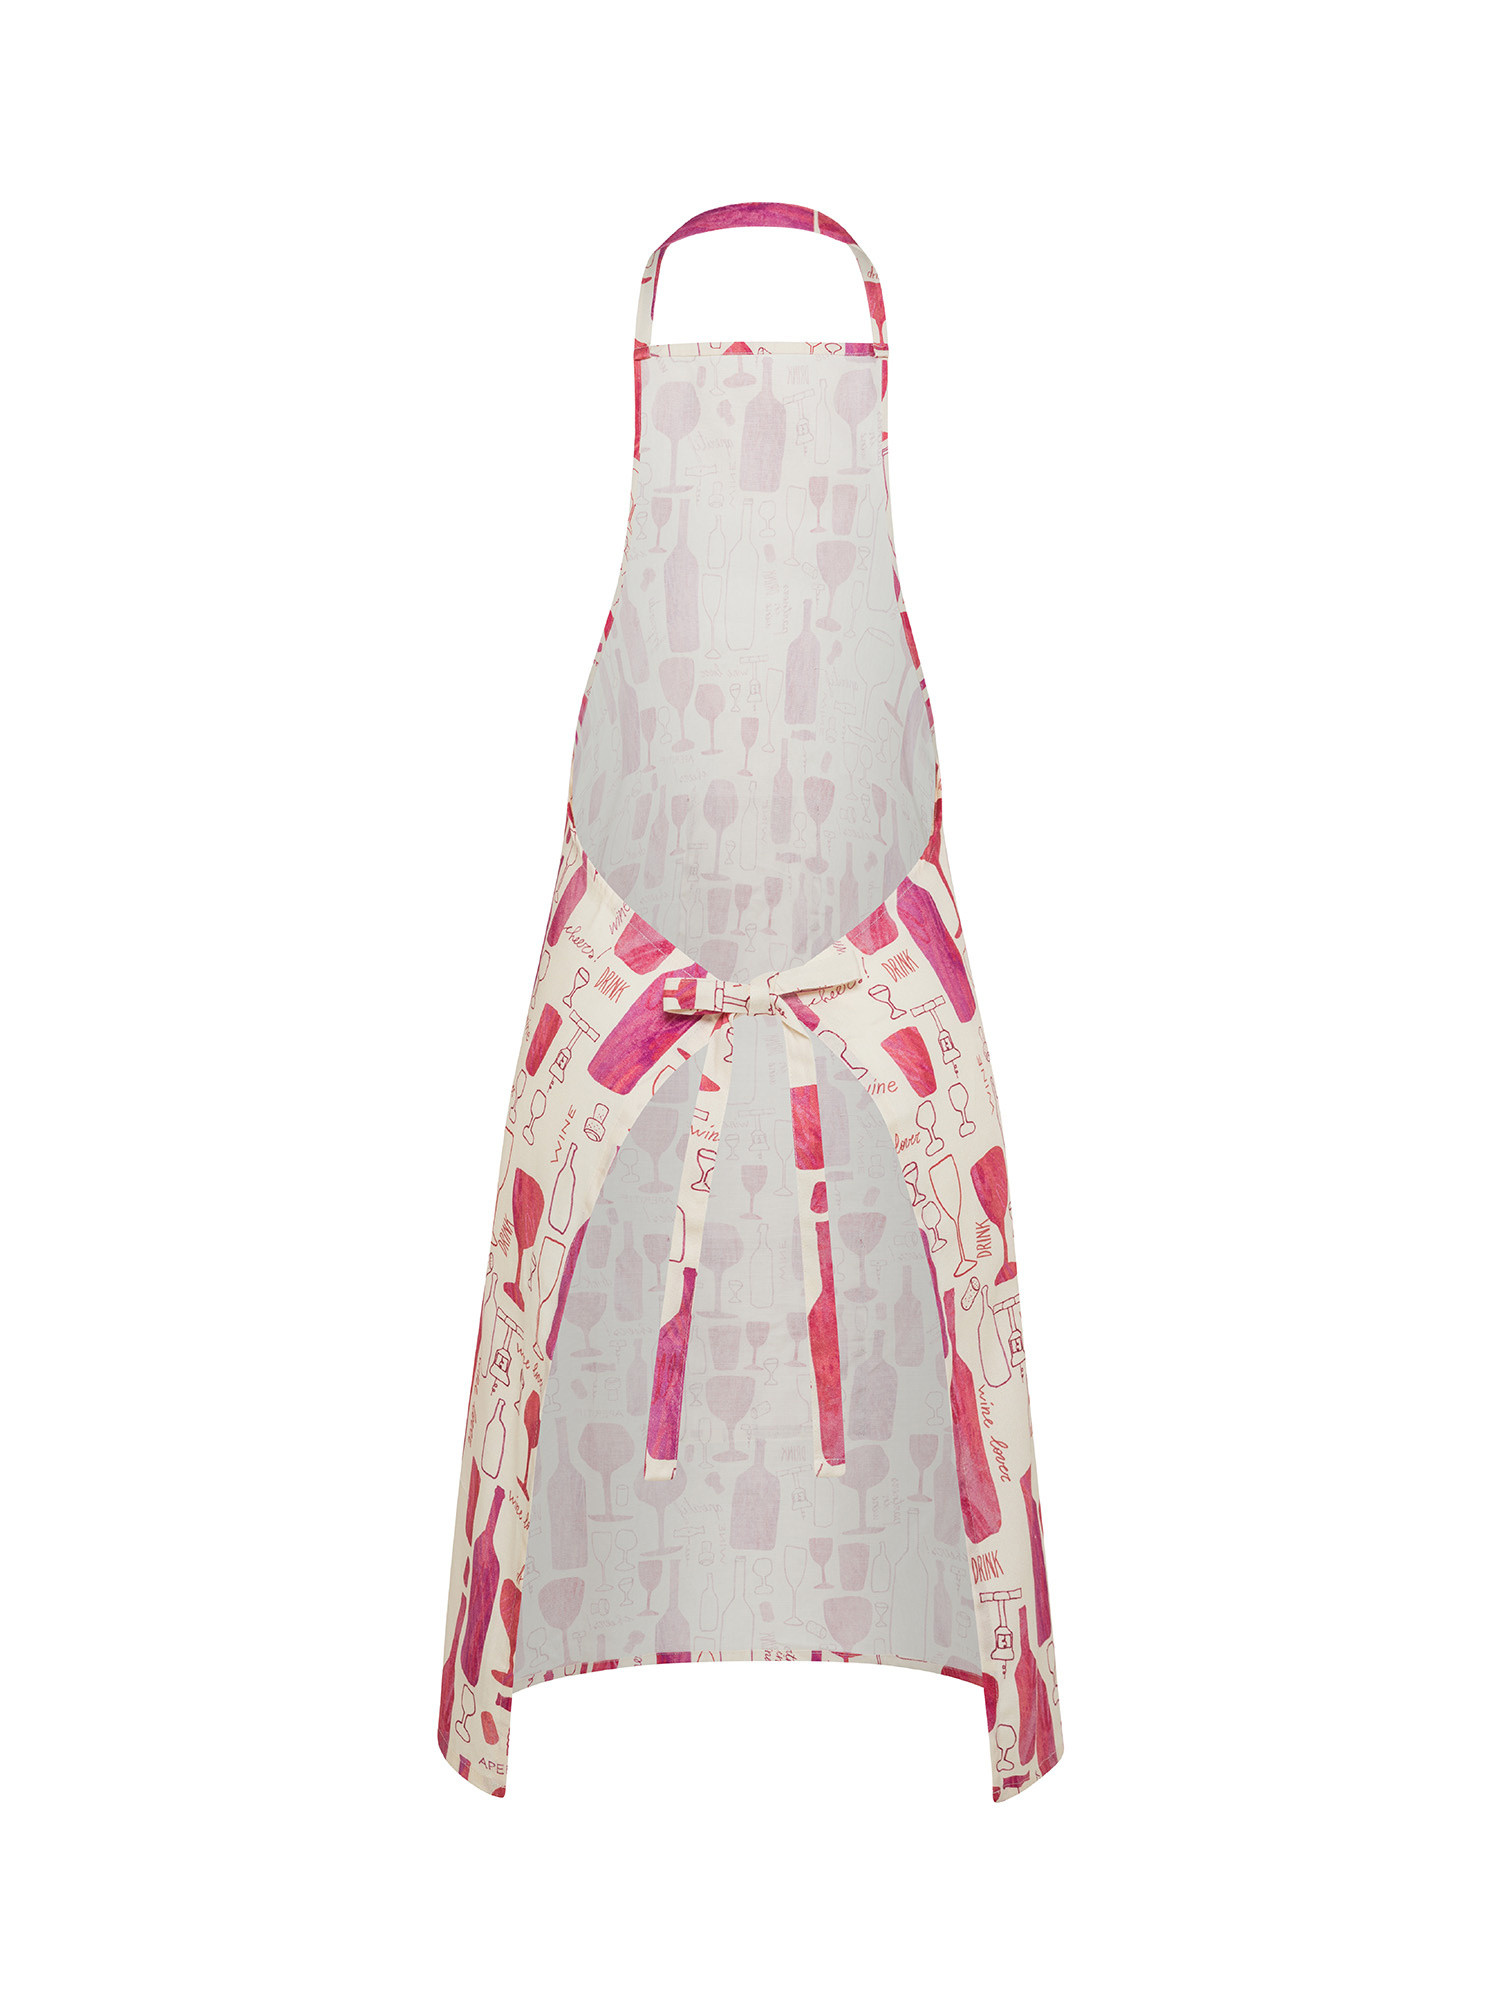 Grembiule da cucina panama di cotone stampa vini, Rosa, large image number 1